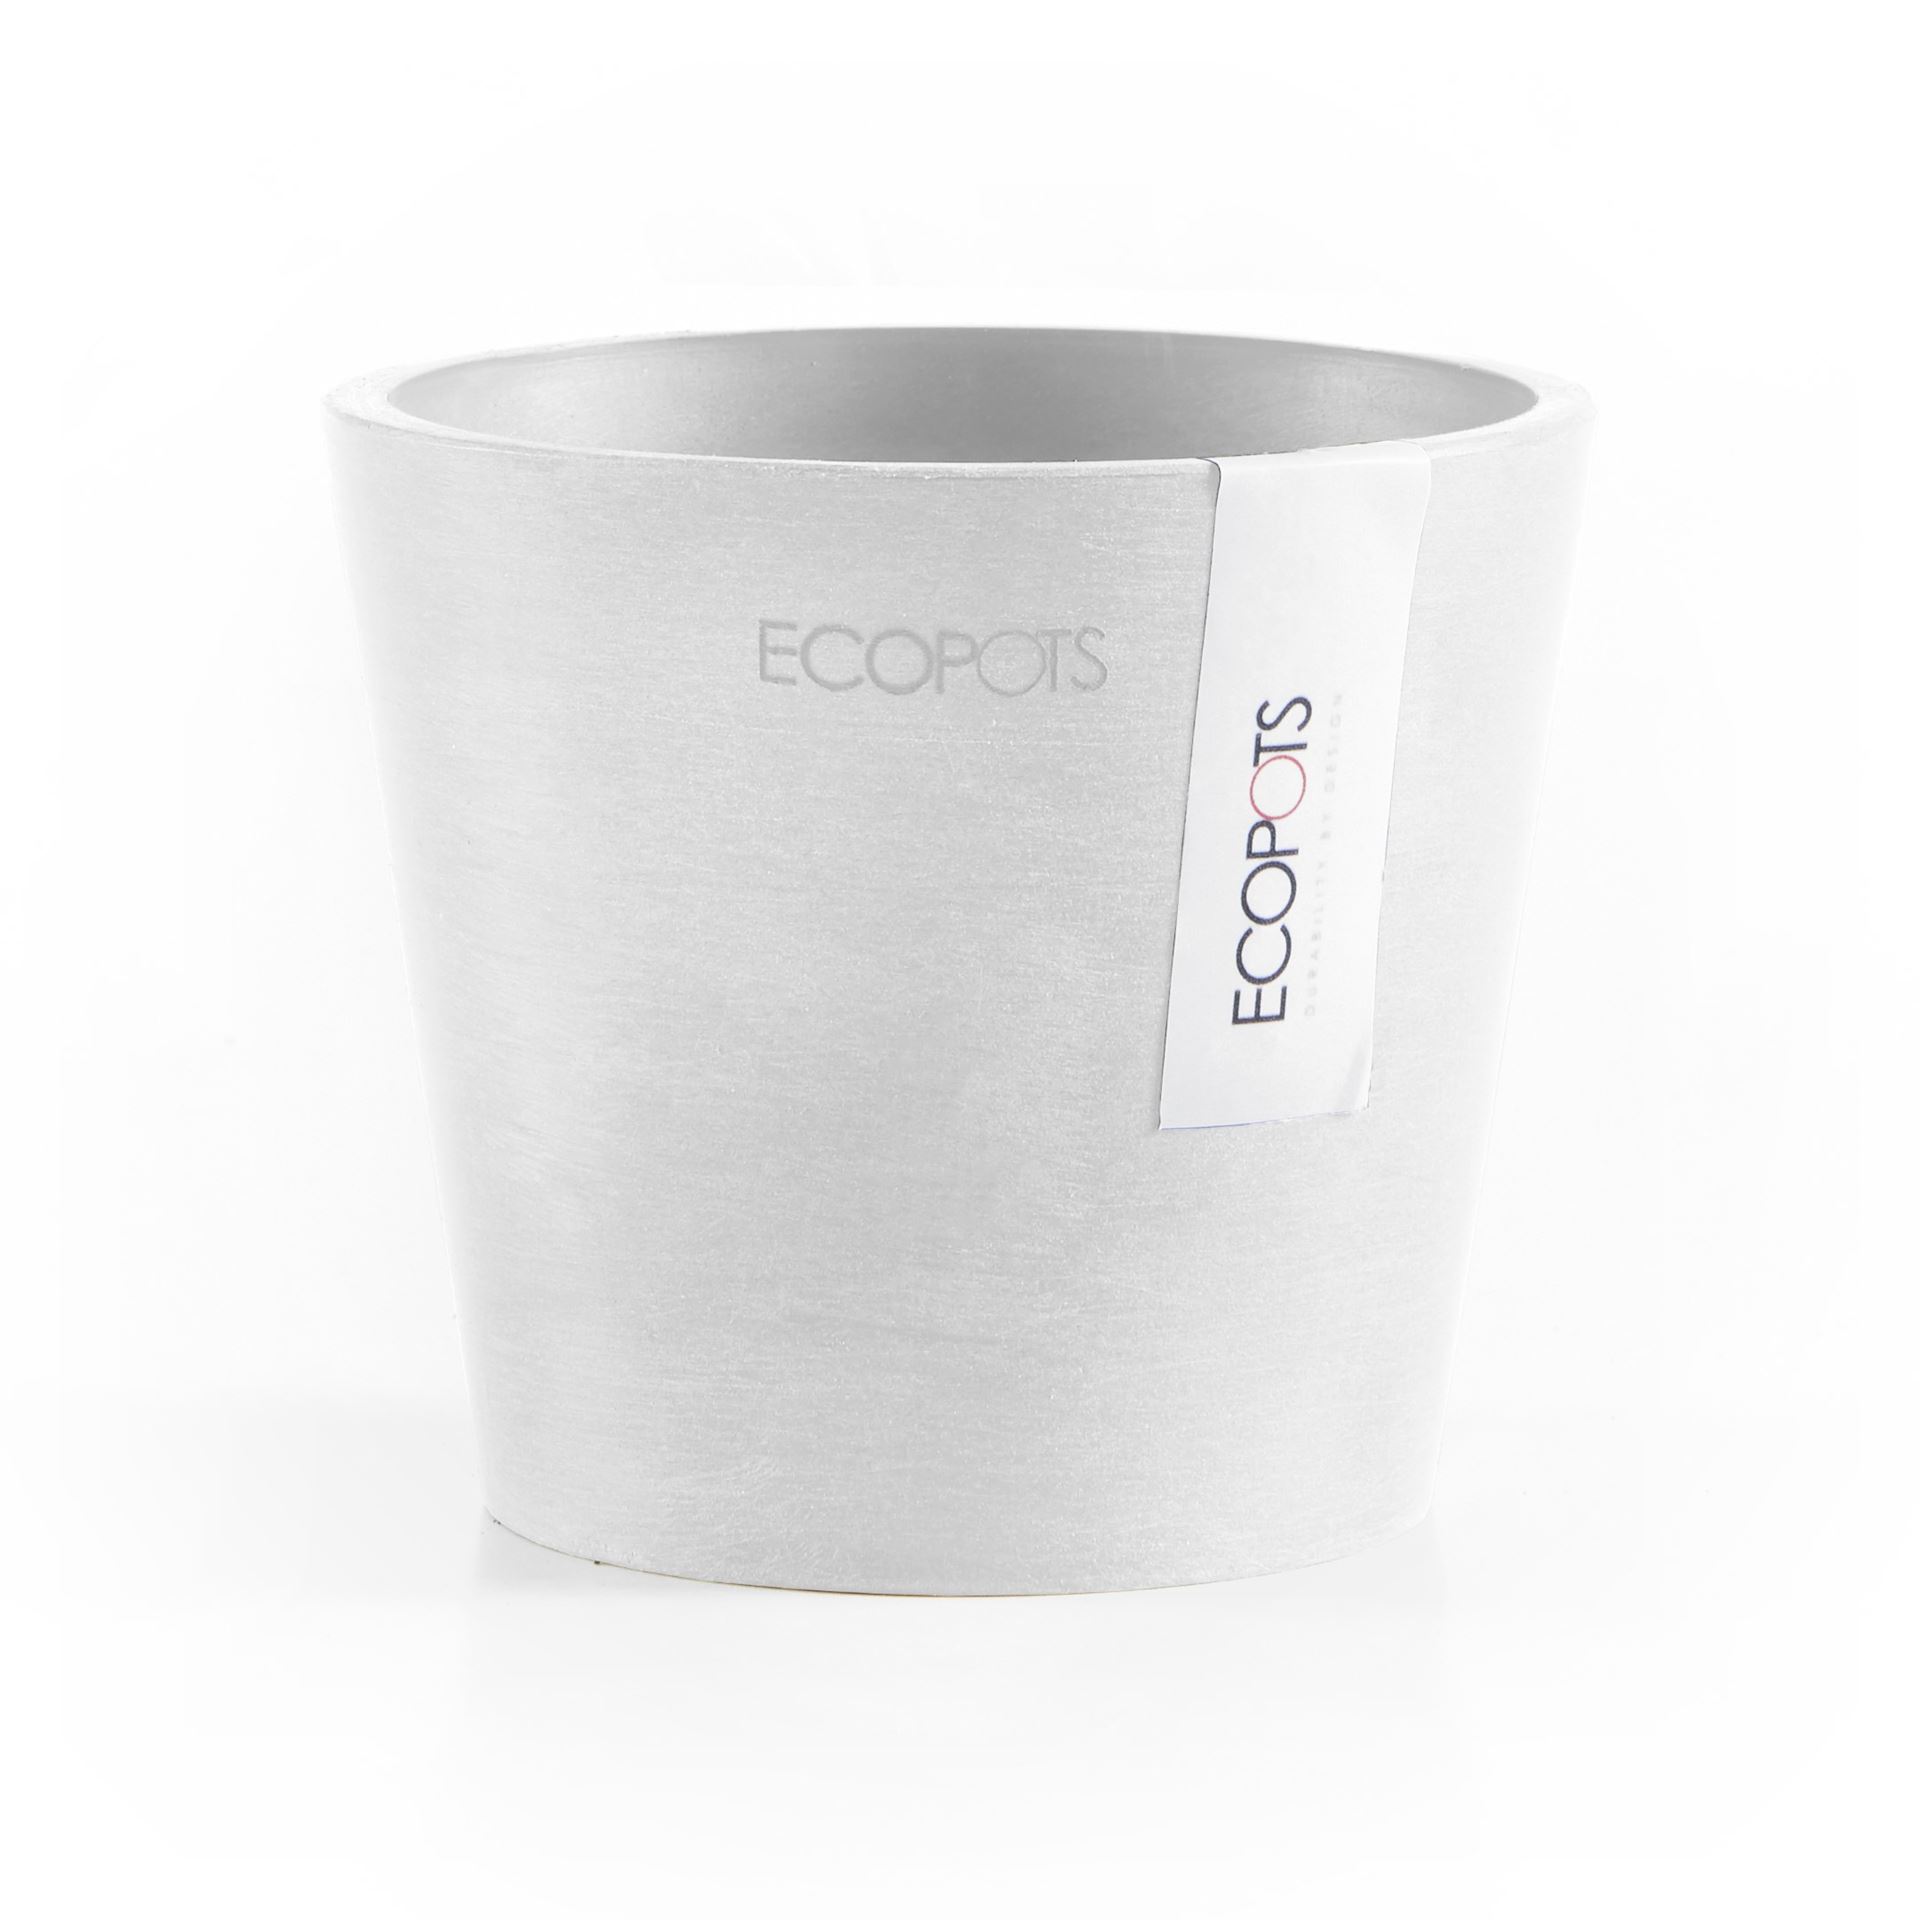 Ecopots-amsterdam-mini-pure-white-10-5-cm-H9-2-cm